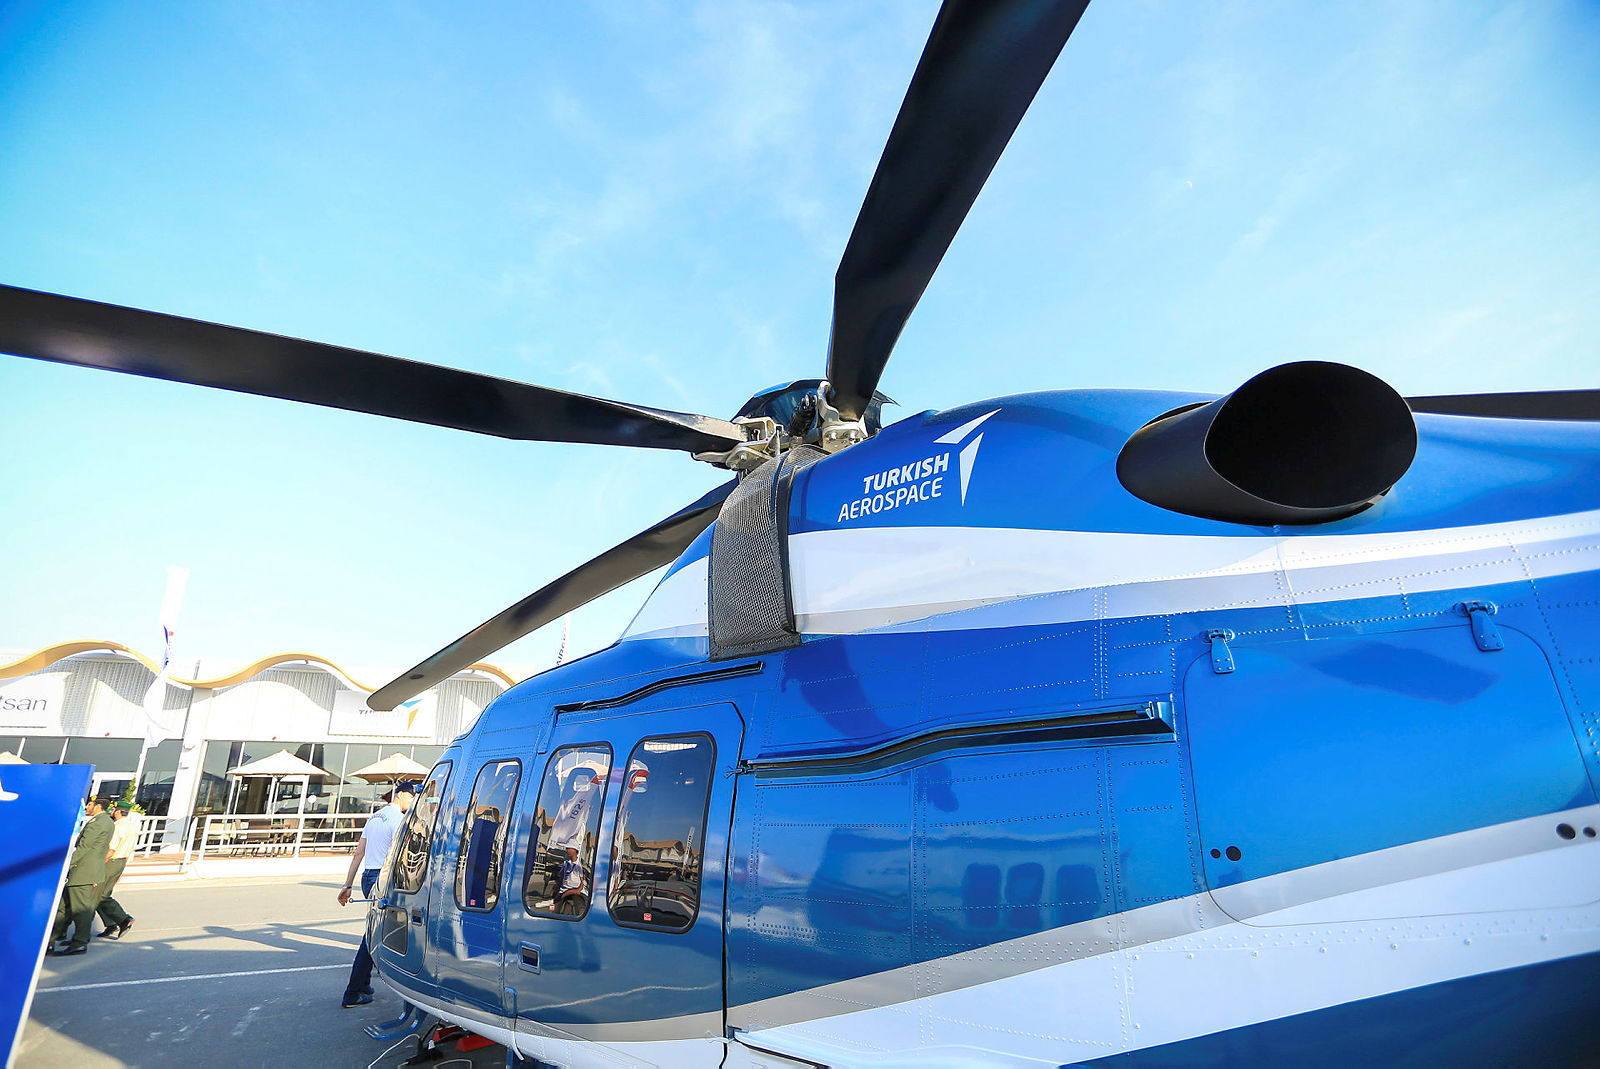 T625 helikopteri Bahreyn Airshow’da ilgi odağı oldu